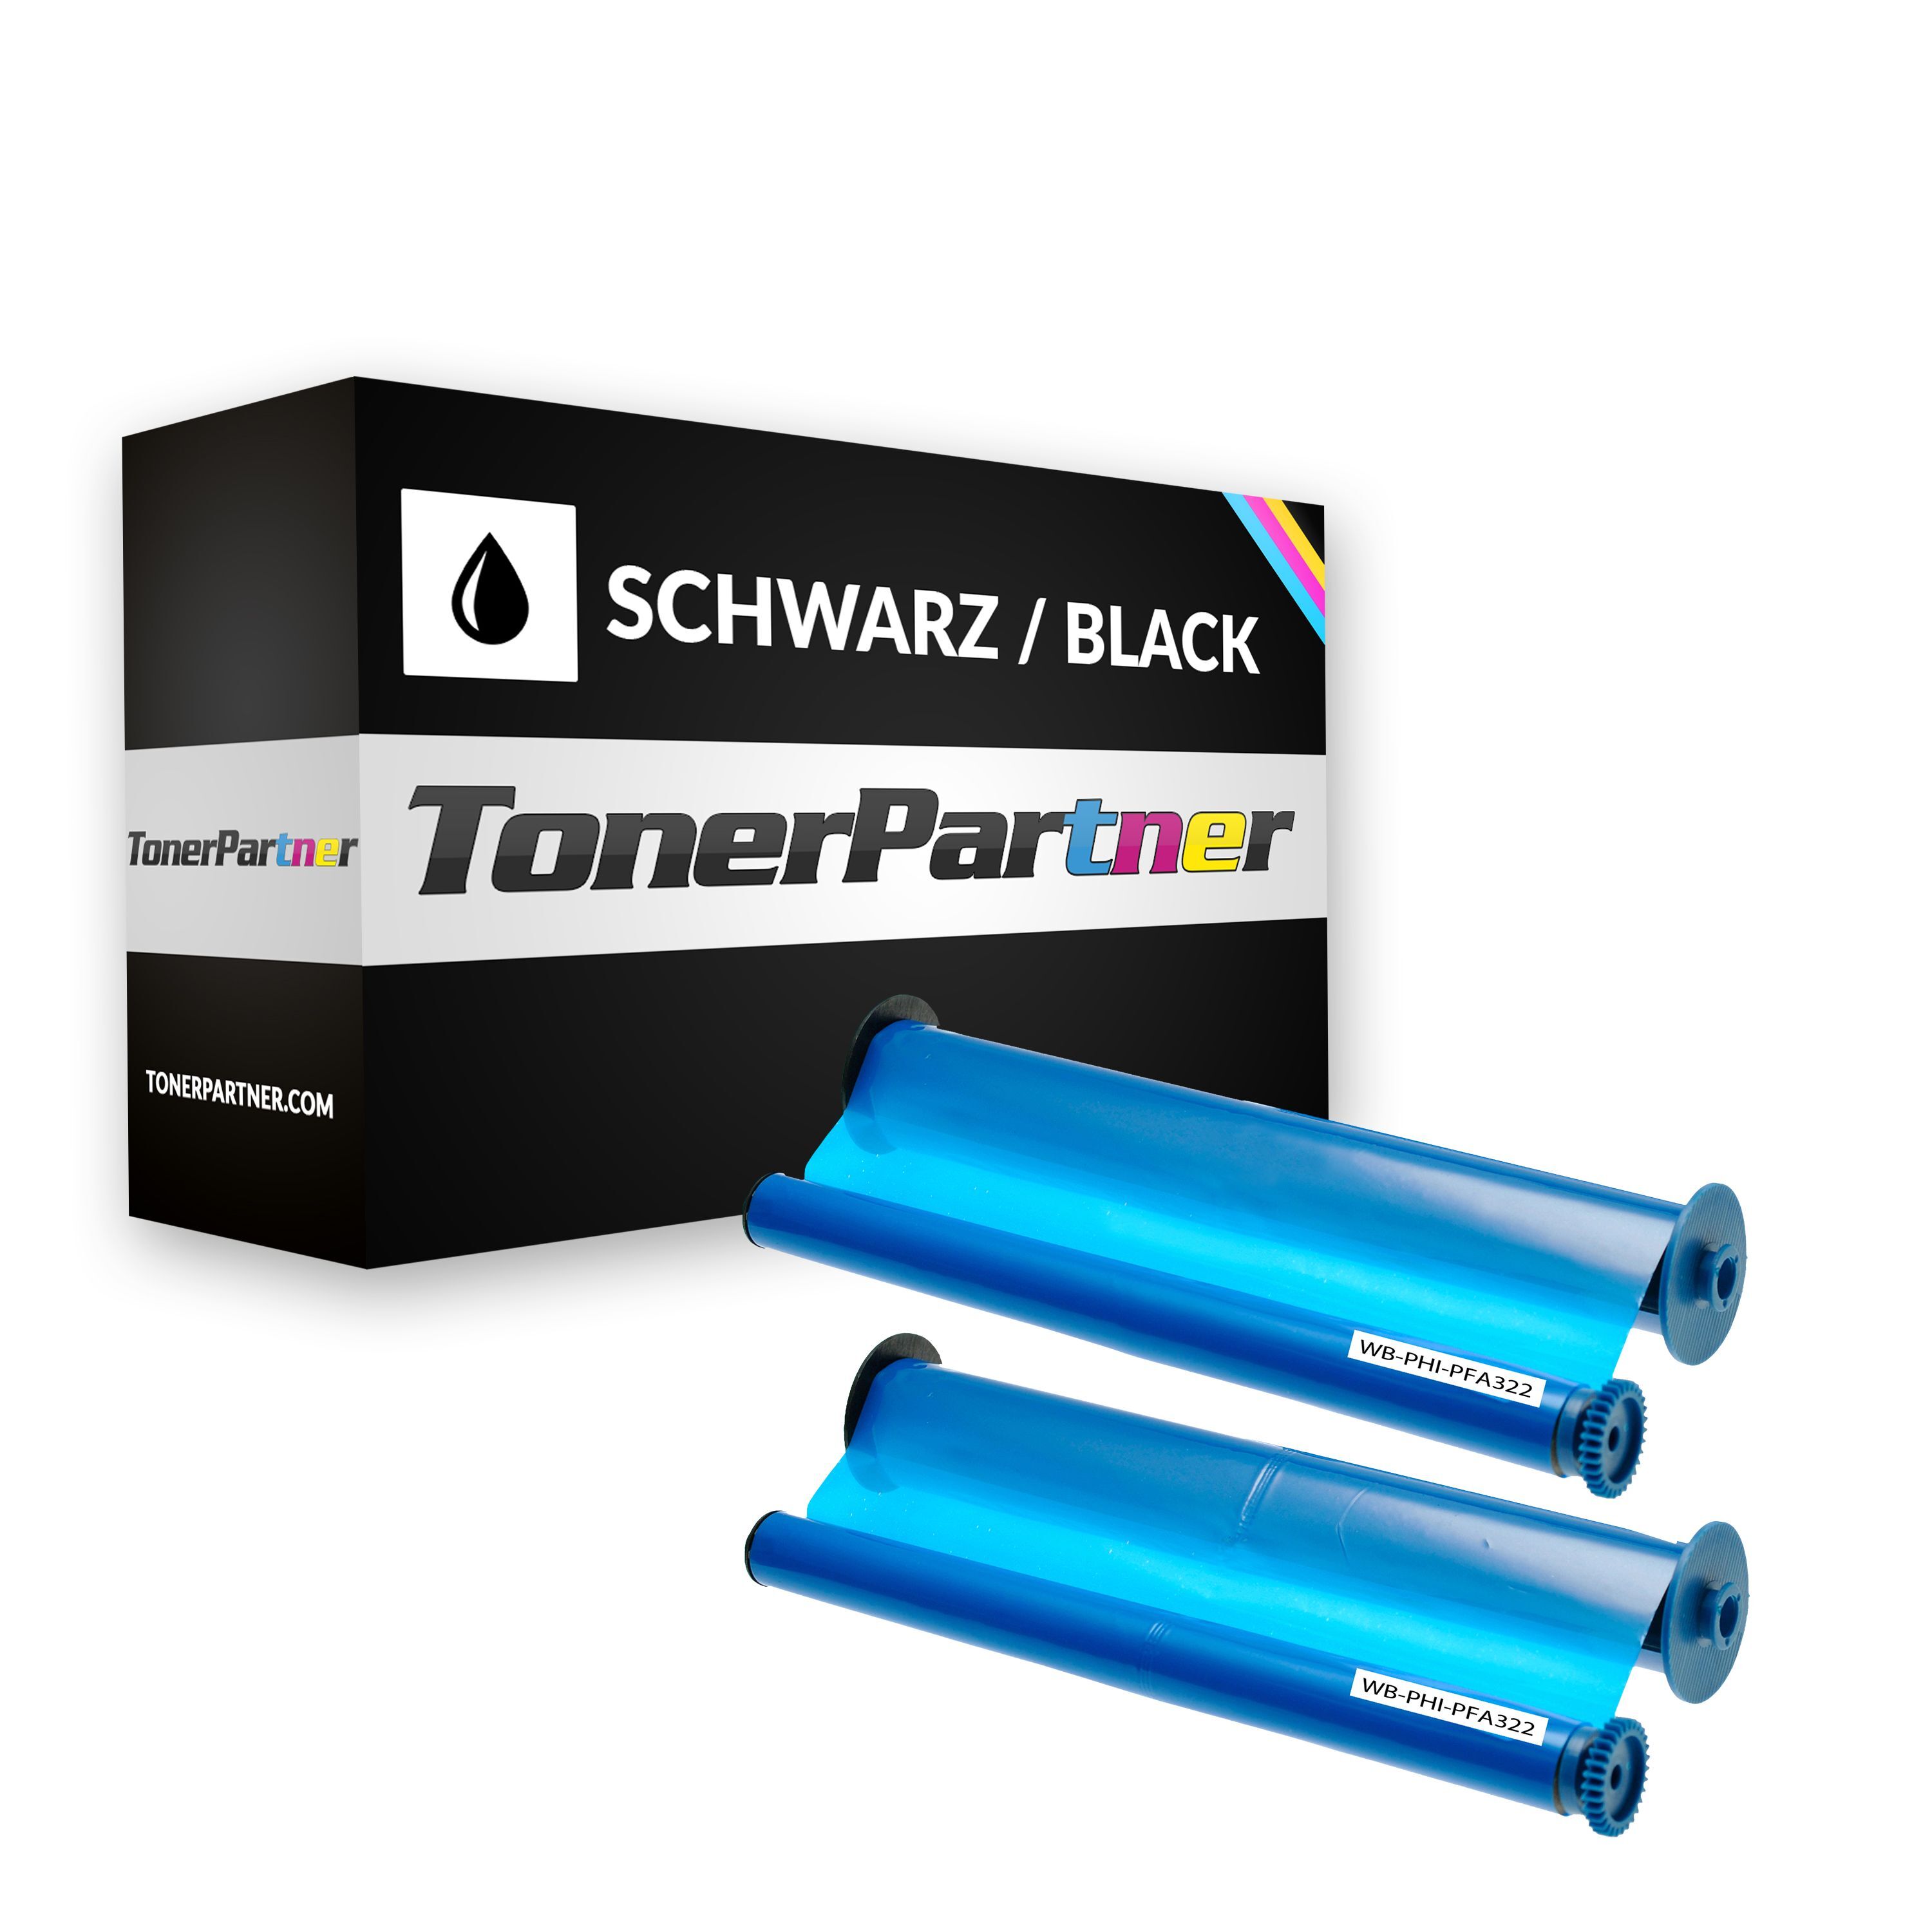 TonerPartner Kompatibel zu Philips PPF 441 Inkfilm (906115306011 / PFA-322) schwarz, 160 Seiten, 9,09 Rp pro Seite von TonerPartner